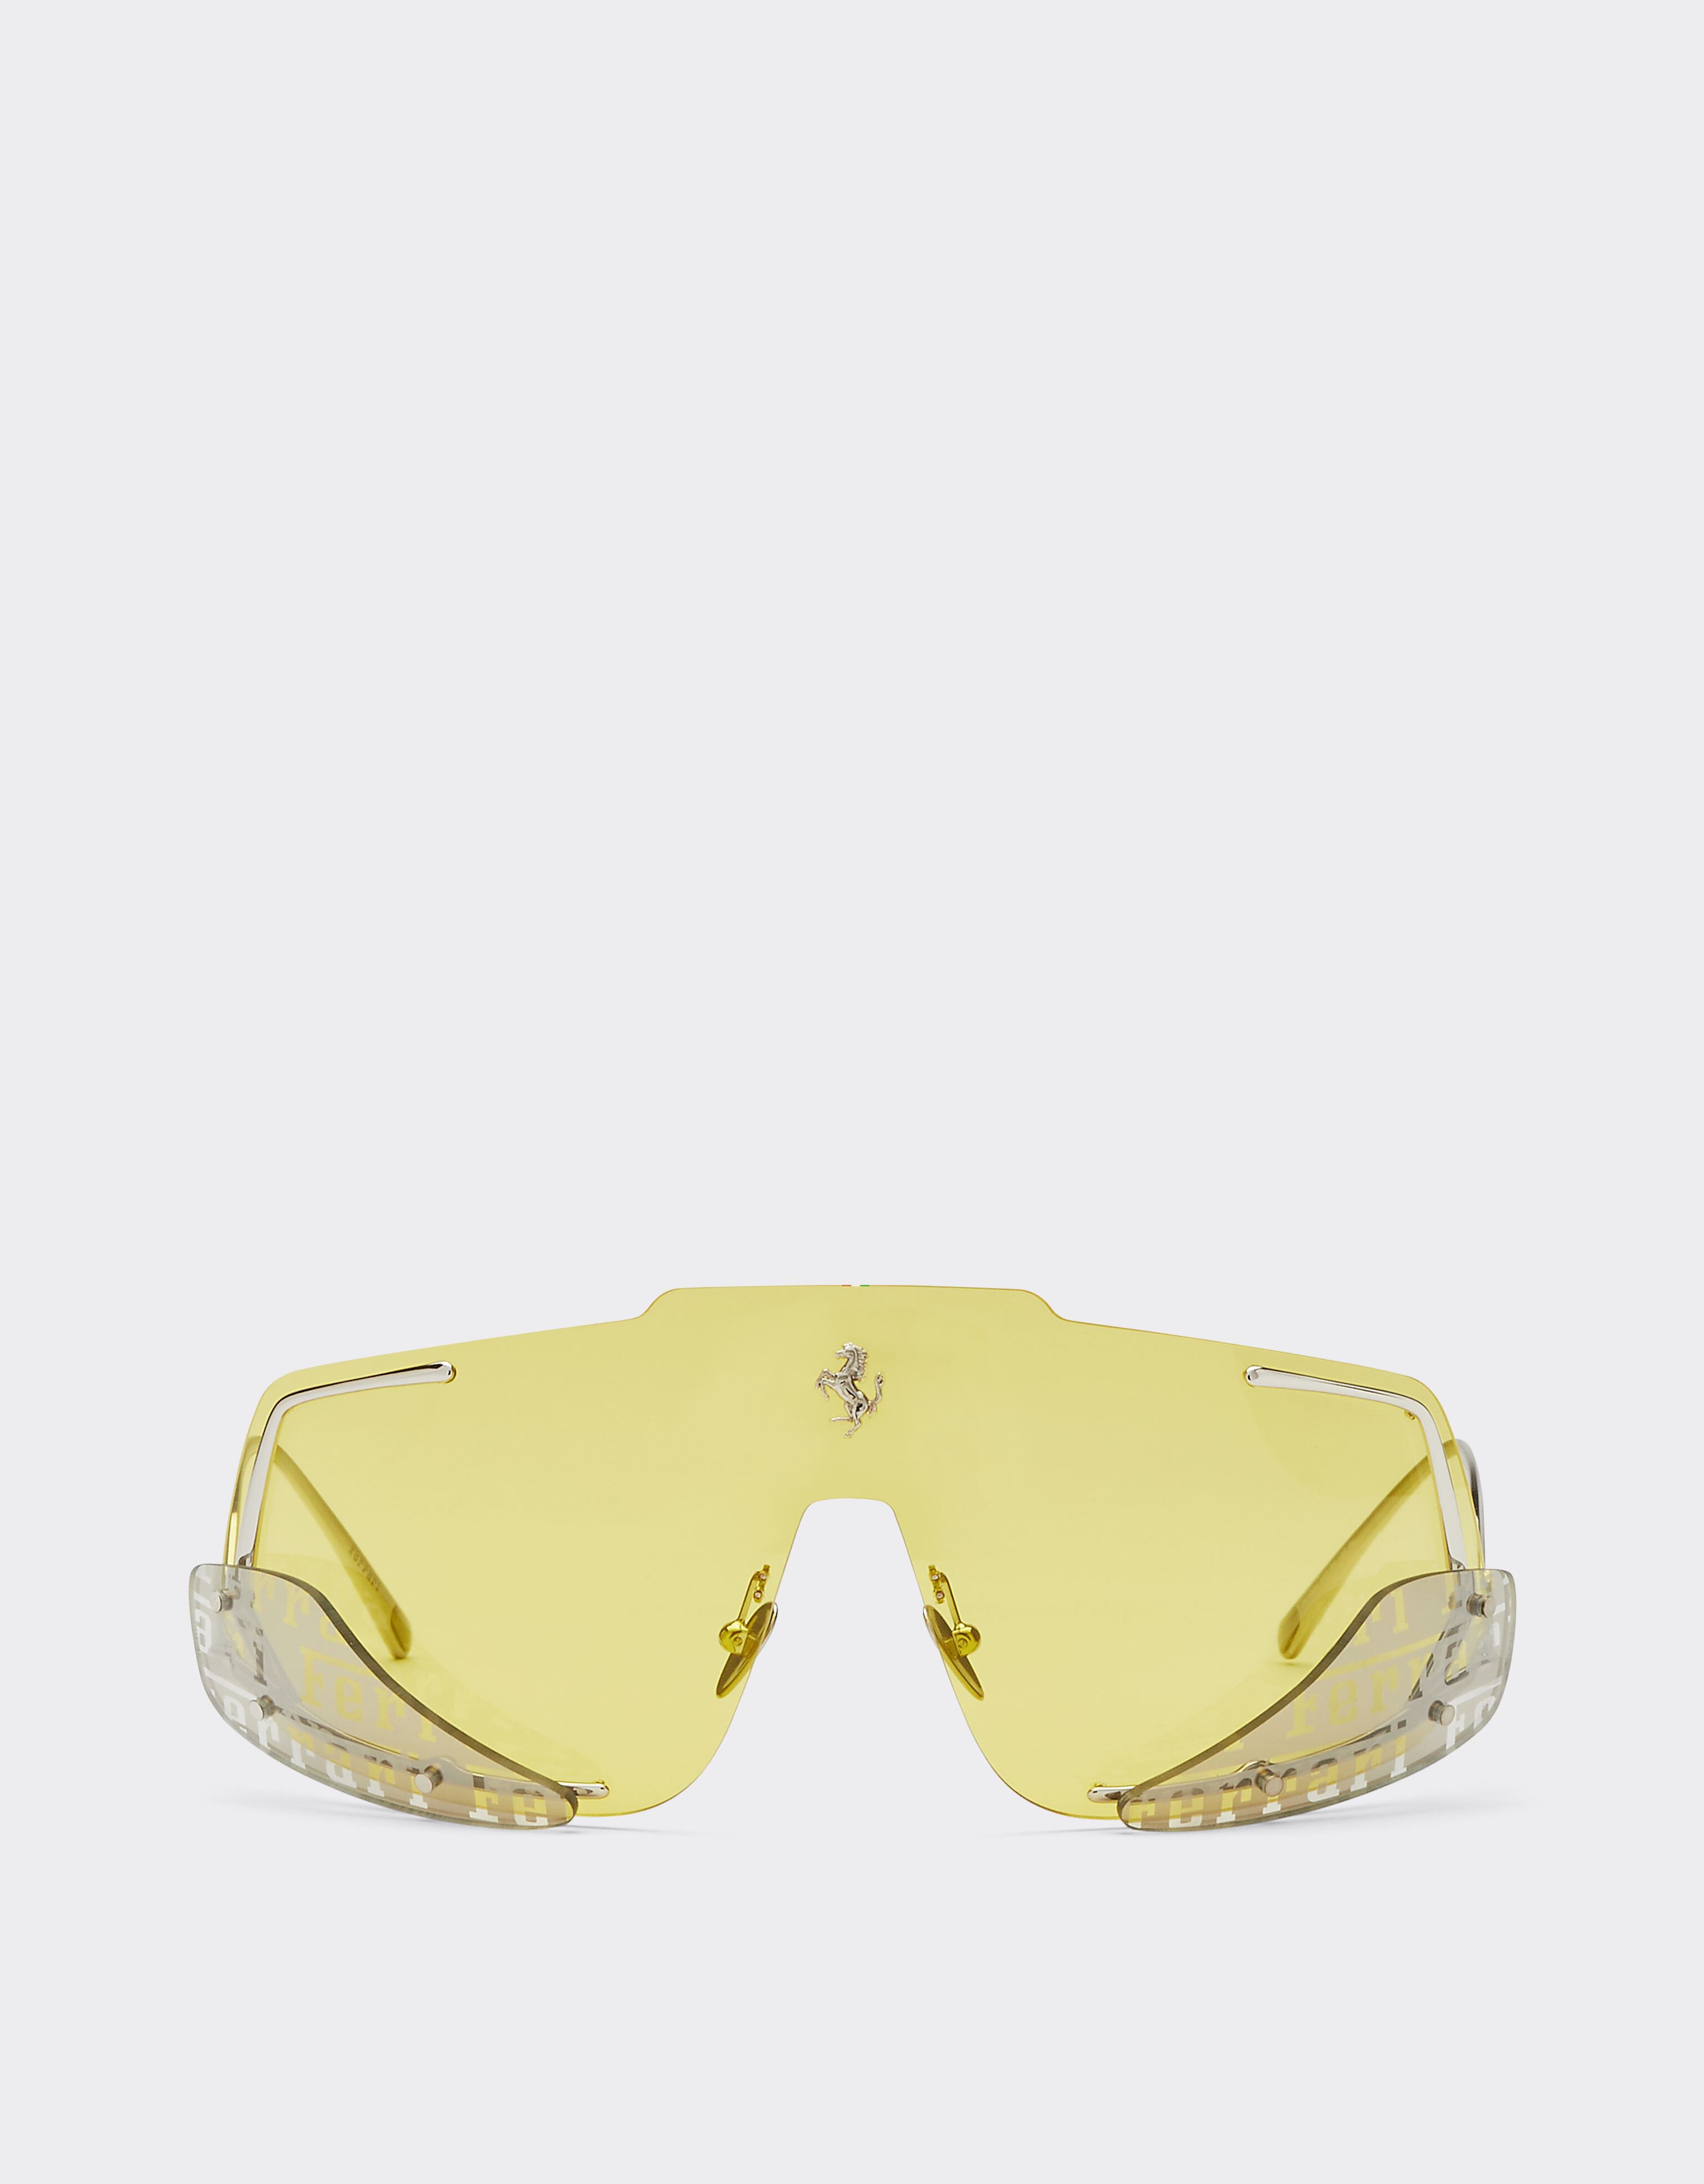 Ferrari Ferrari sunglasses with yellow lenses Black Matt F1250f